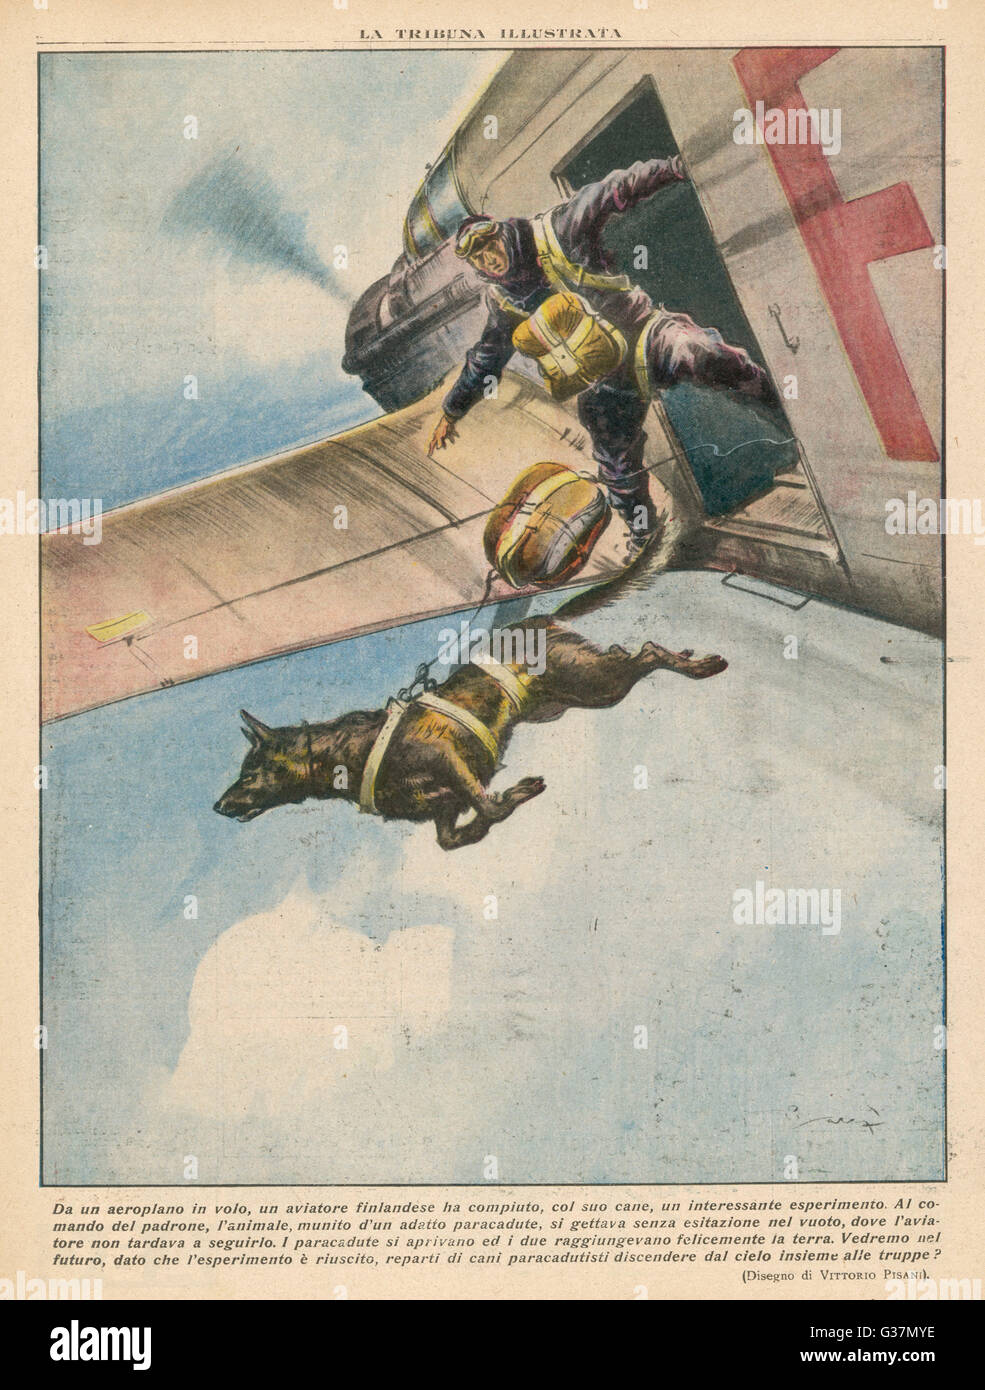 Ein finnische Fallschirmspringer springt mit seinem Hund, der bei seinem Master-Befehl ohne zu zögern aus dem Flugzeug springt, beide landen sicher auf sechs Beinen Datum: 1937 Stockfoto